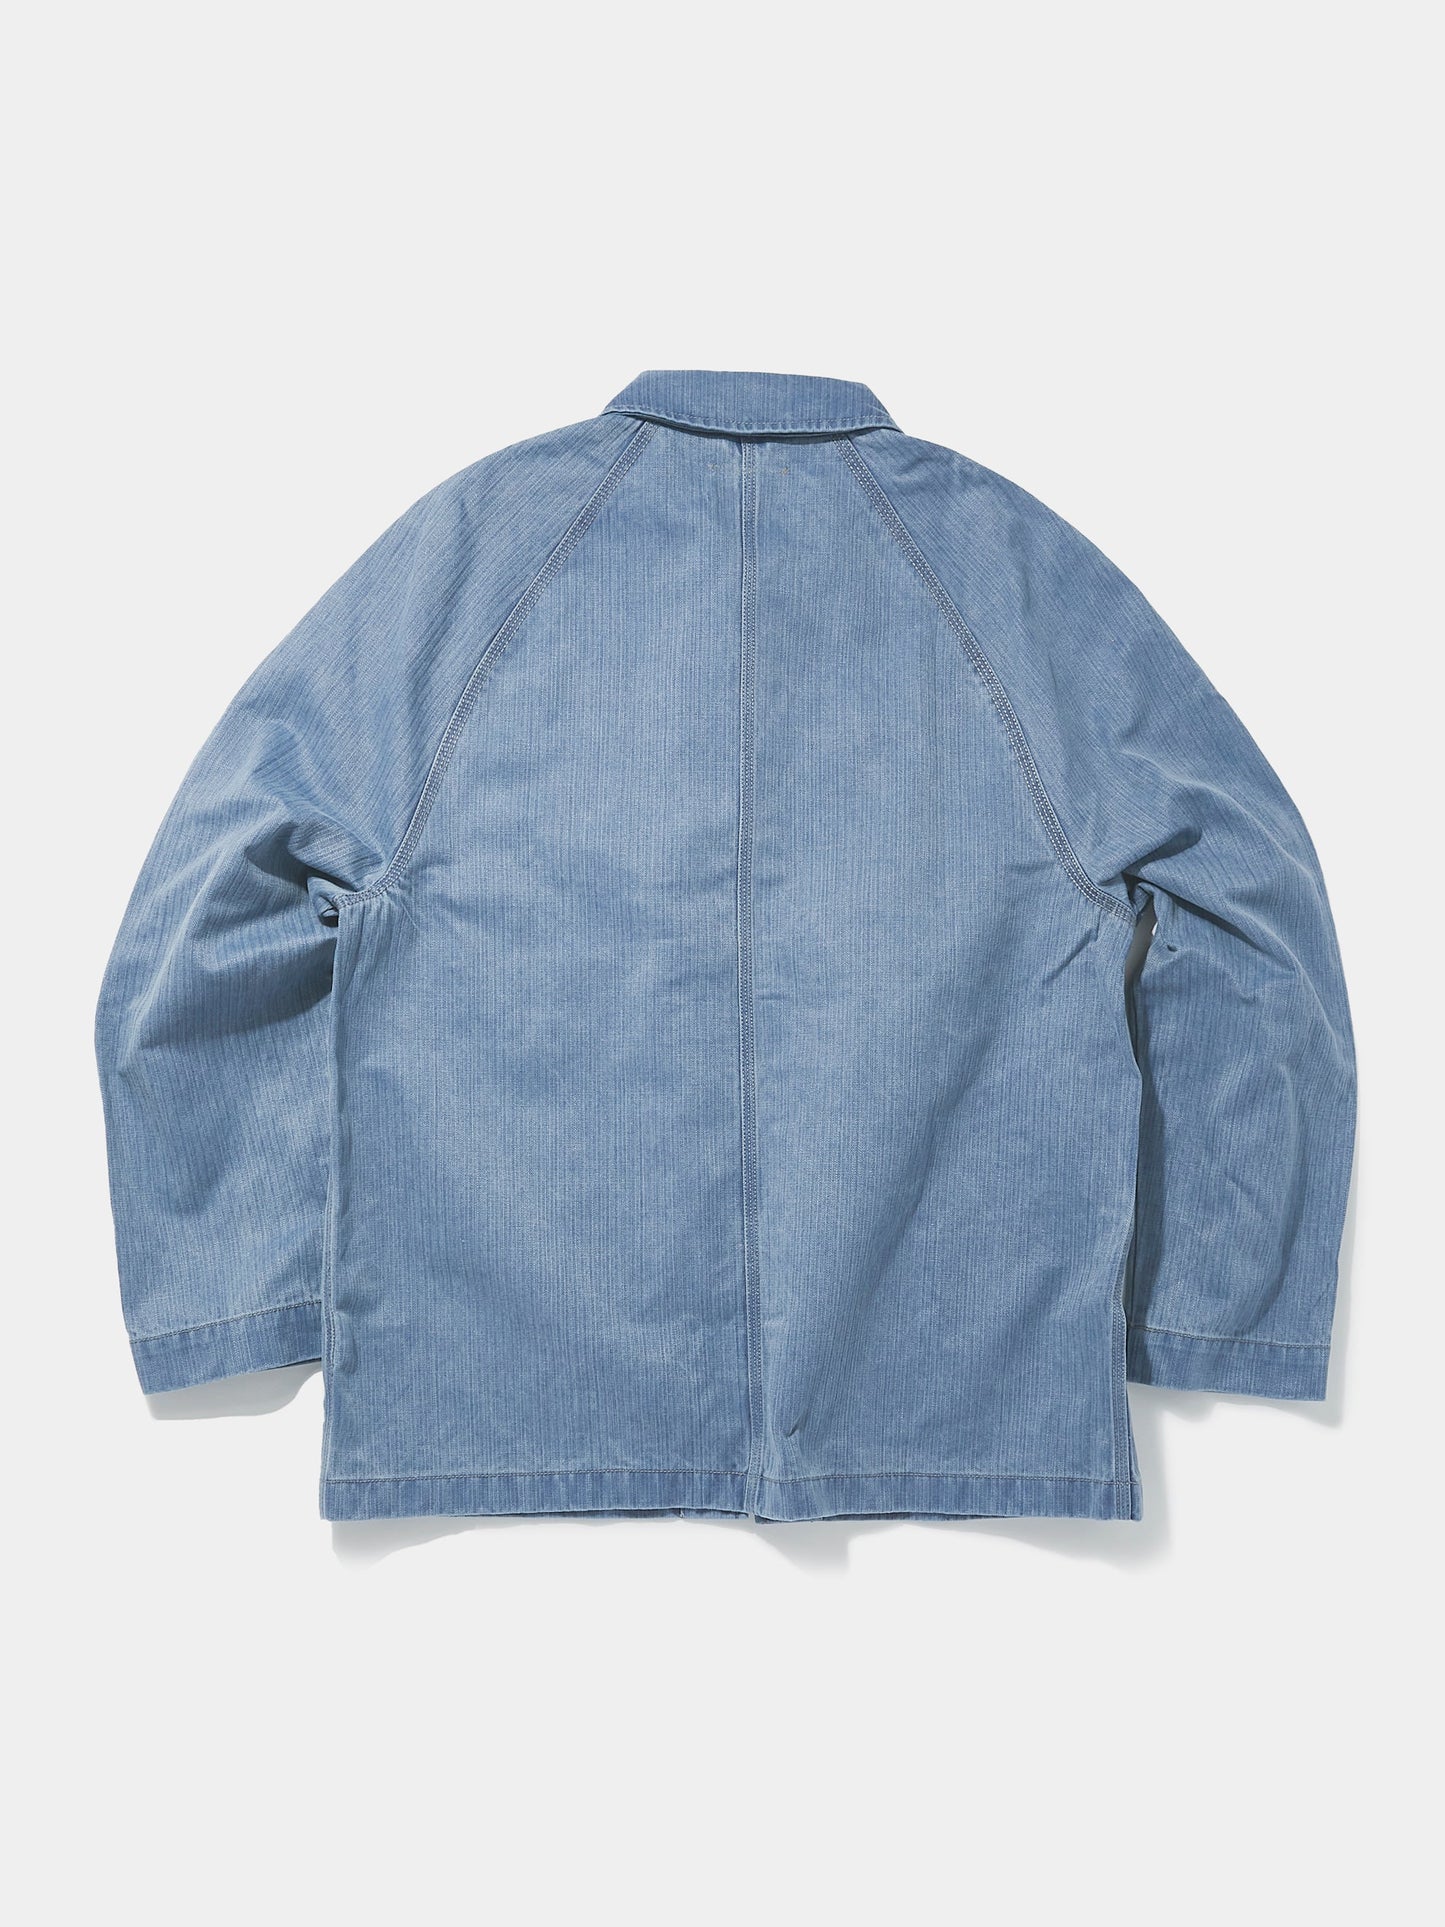 Union x J.Crew Chore Coat (Vintage Blue)